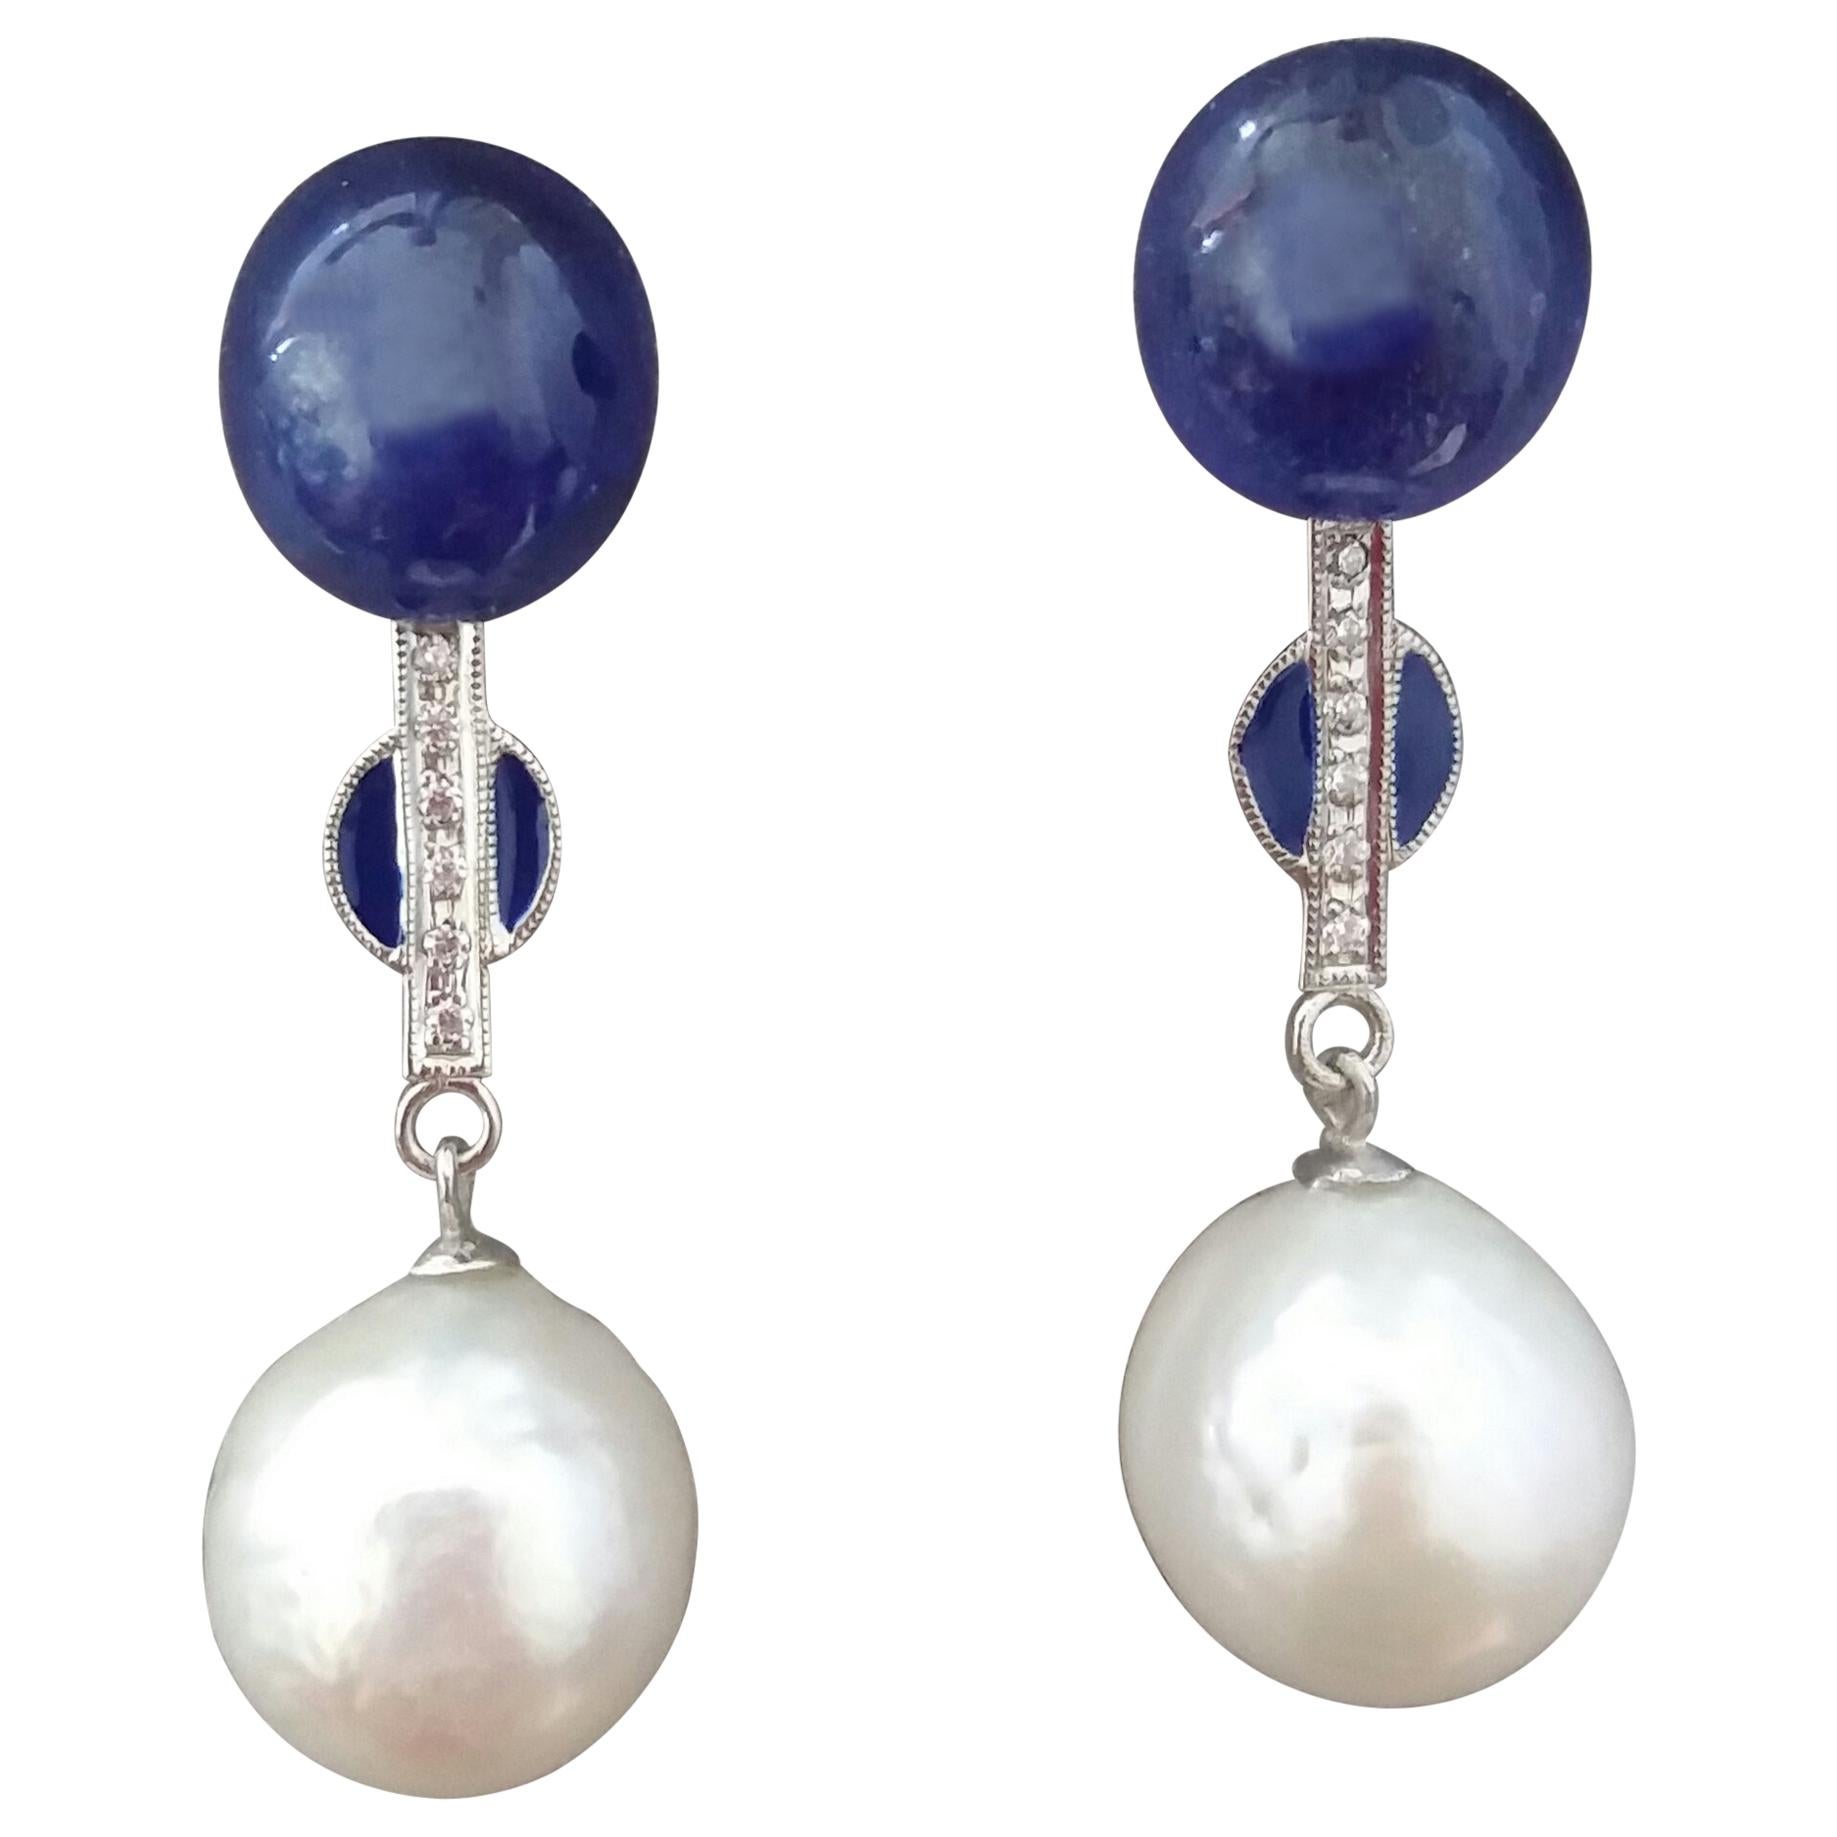 Boucles d'oreilles baroques en or, perles blanches, diamants, saphirs bleus et émail bleu